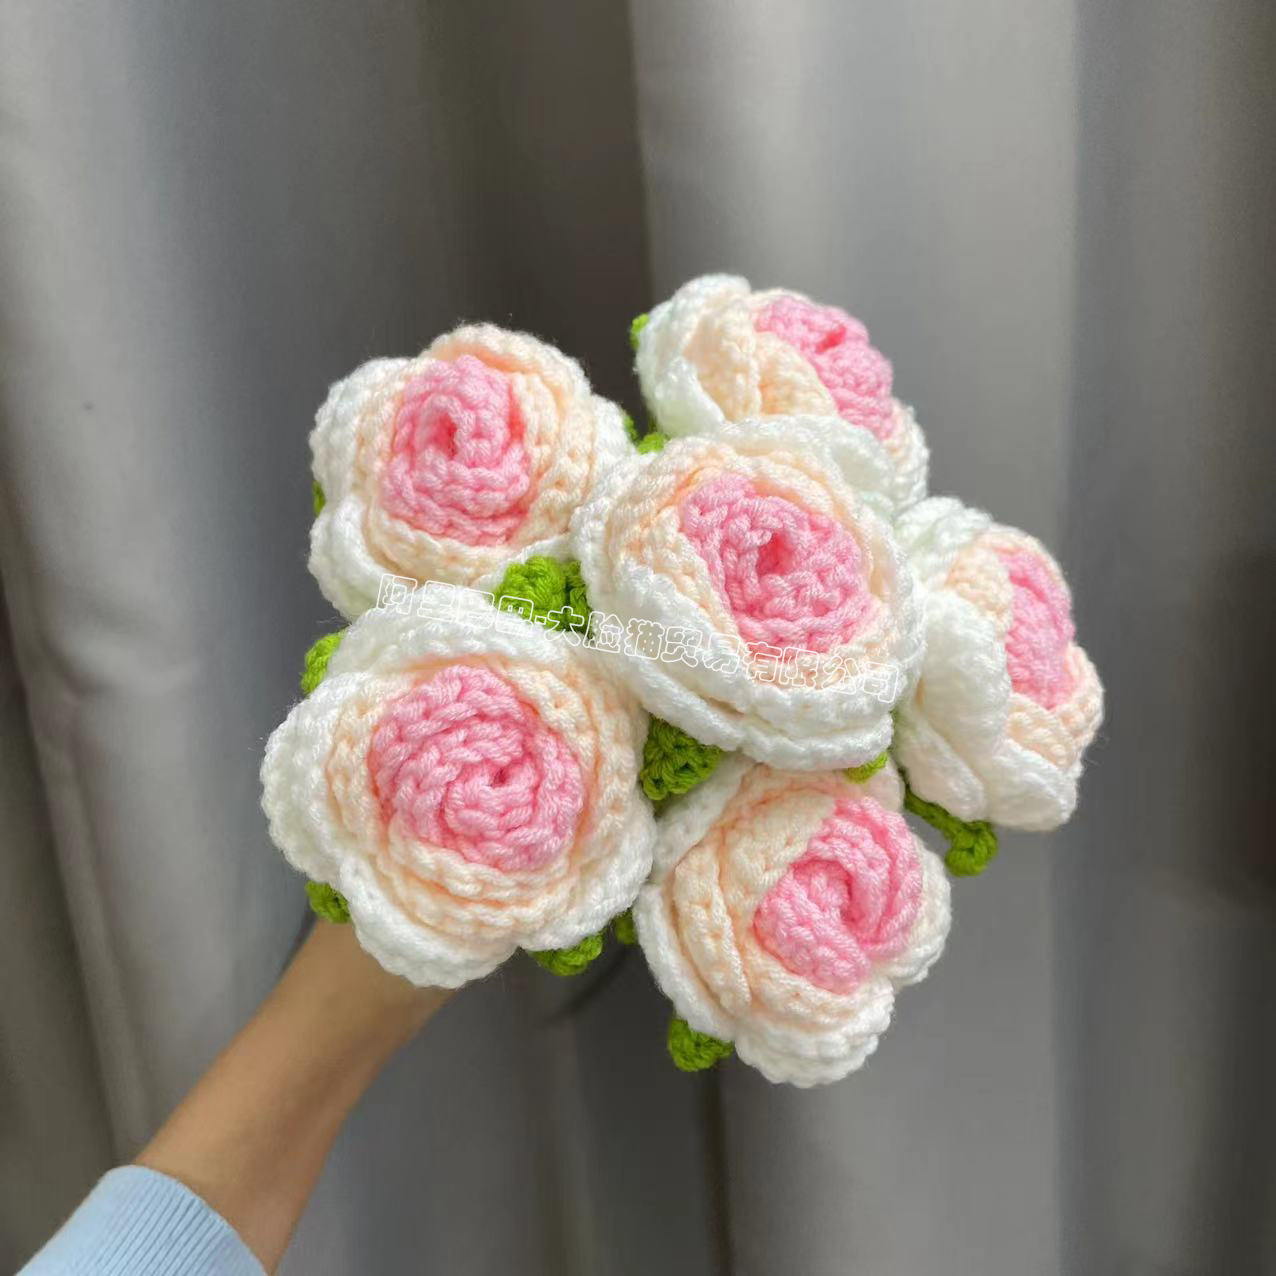 Finished Hand-Woven Rose Artificial Flower Woven Handmade Flowers Diy Wool Woven Homemade Crochet Bouquet